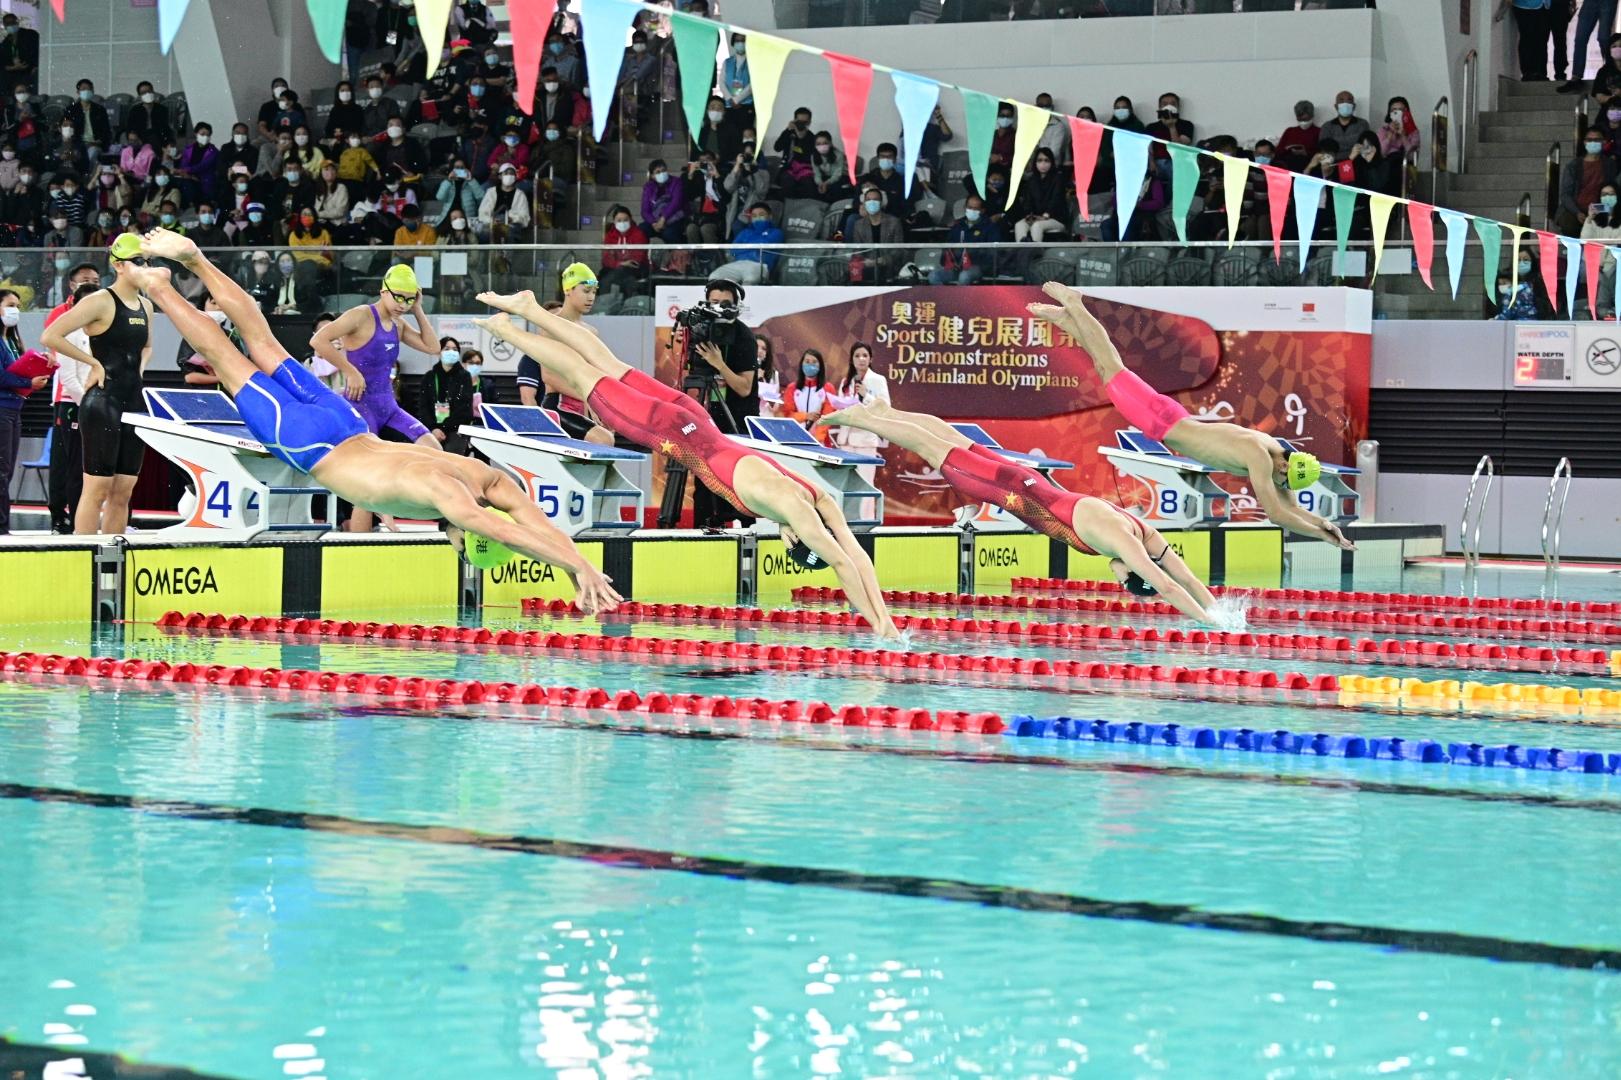 東京2020奧運會內地奧運健兒代表團今日（十二月四日）上午出席在維多利亞公園游泳池舉行的「奧運健兒展風采」運動示範。圖示內地游泳運動員與香港游泳運動員組隊進行接力賽。